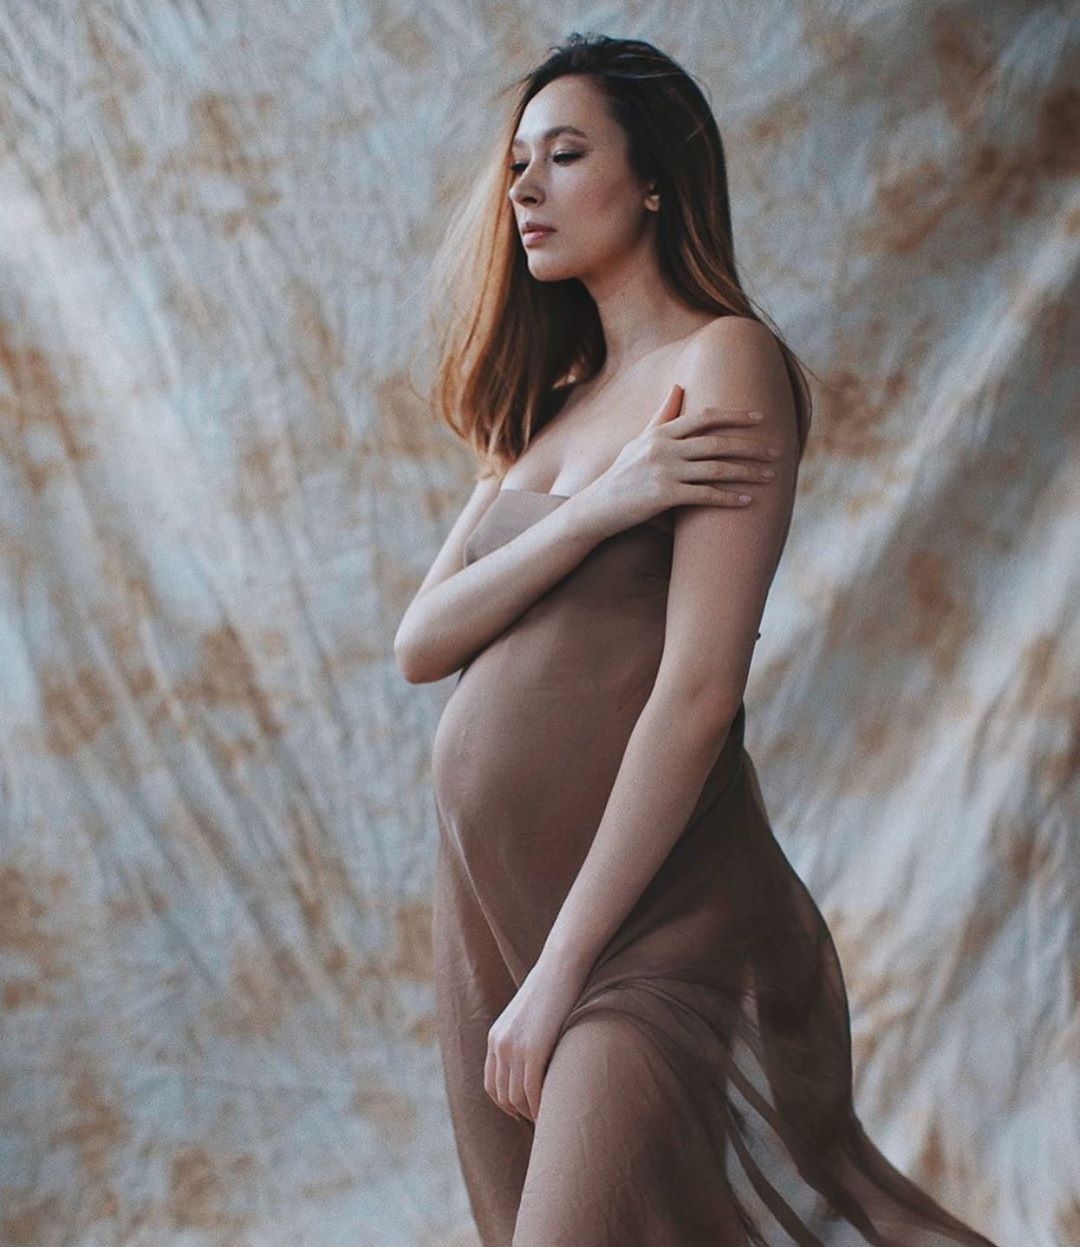 Алекса рассказала о новом бойфренде и его беременной девушке: "Я никого не отбивала, это просто стечение обстоятельств" - фото №3